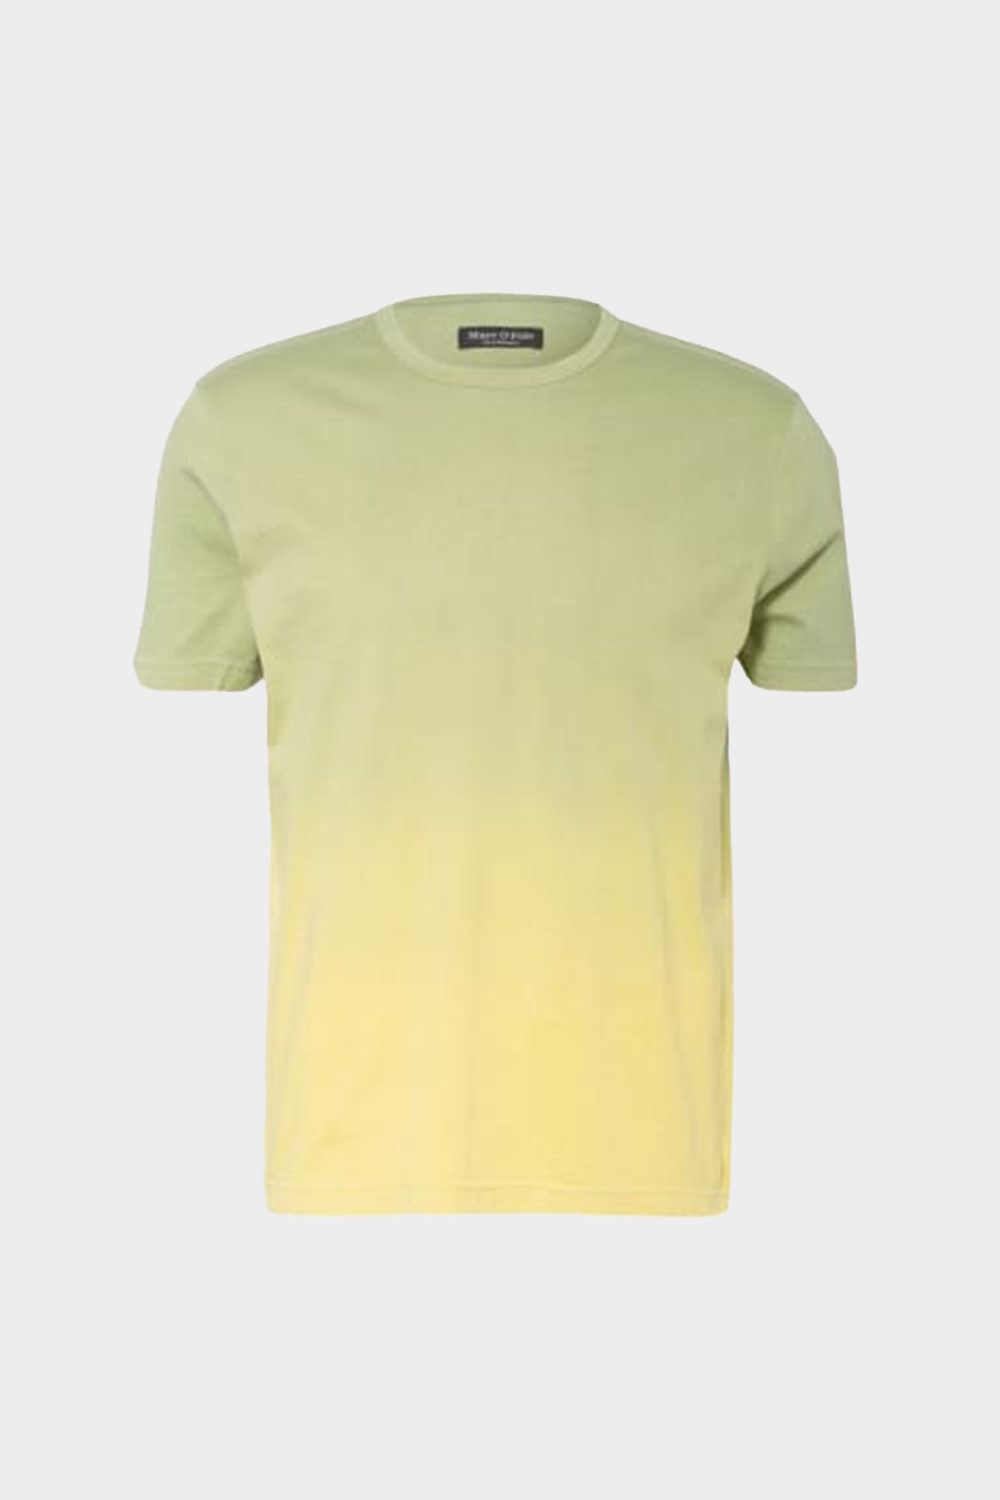 חולצה לגברים בצבע ירוק MARC O POLO MARC O'POLO Vendome online | ונדום .